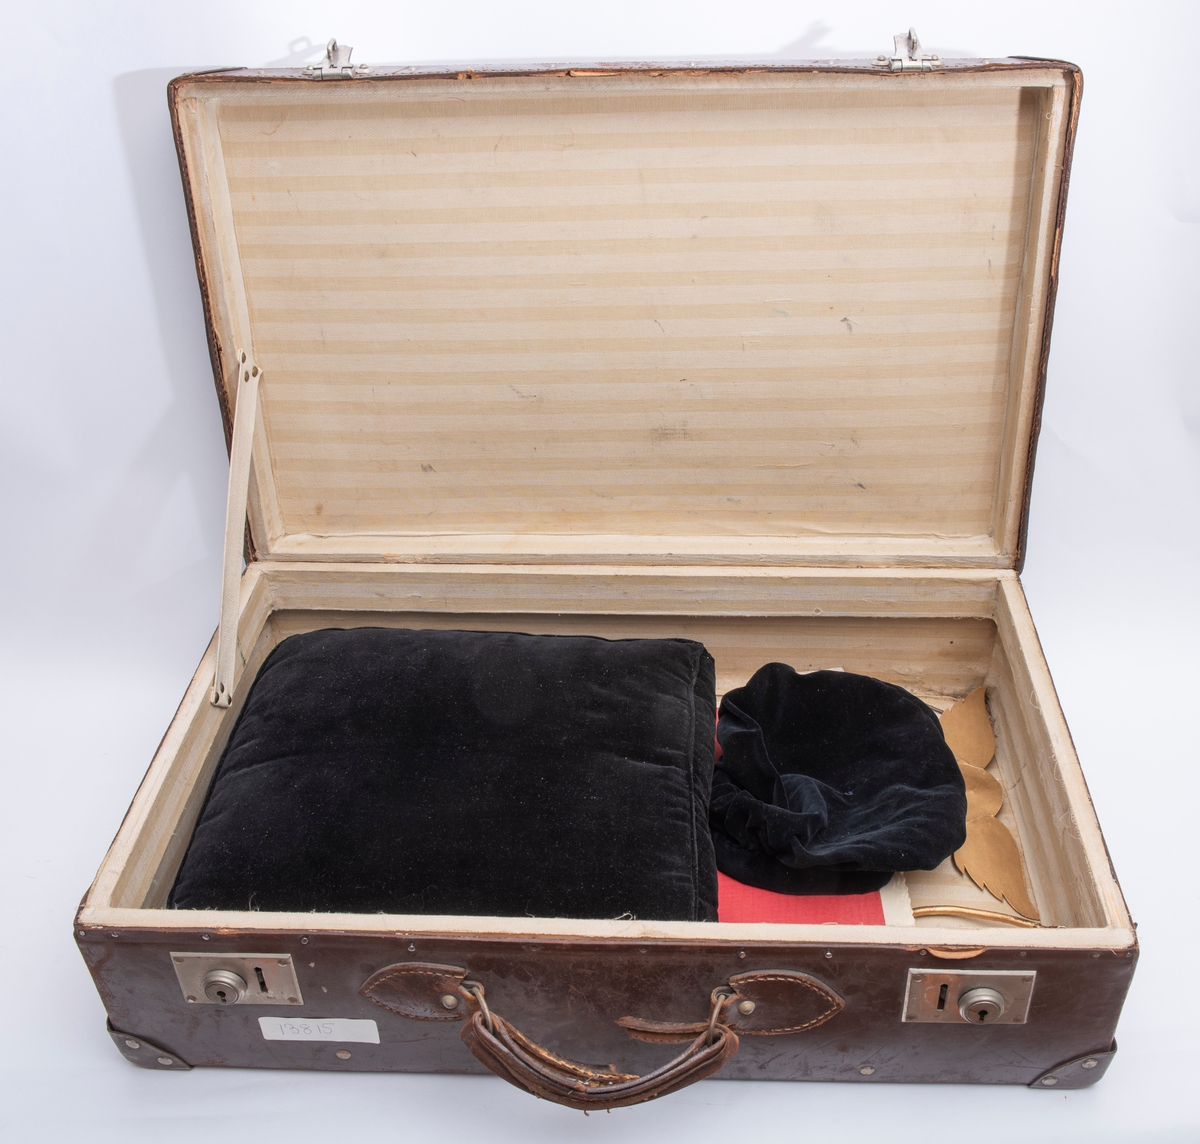 Kofferten har inneholdt alle smågjenstandene brukt til seremonier i Oslo Kvinnelige Handelsstands Forenings orden Dona Mercuri. Alle disse gjenstandene har fått registreringsnumrene KMR.03841 tom. KMR.03864